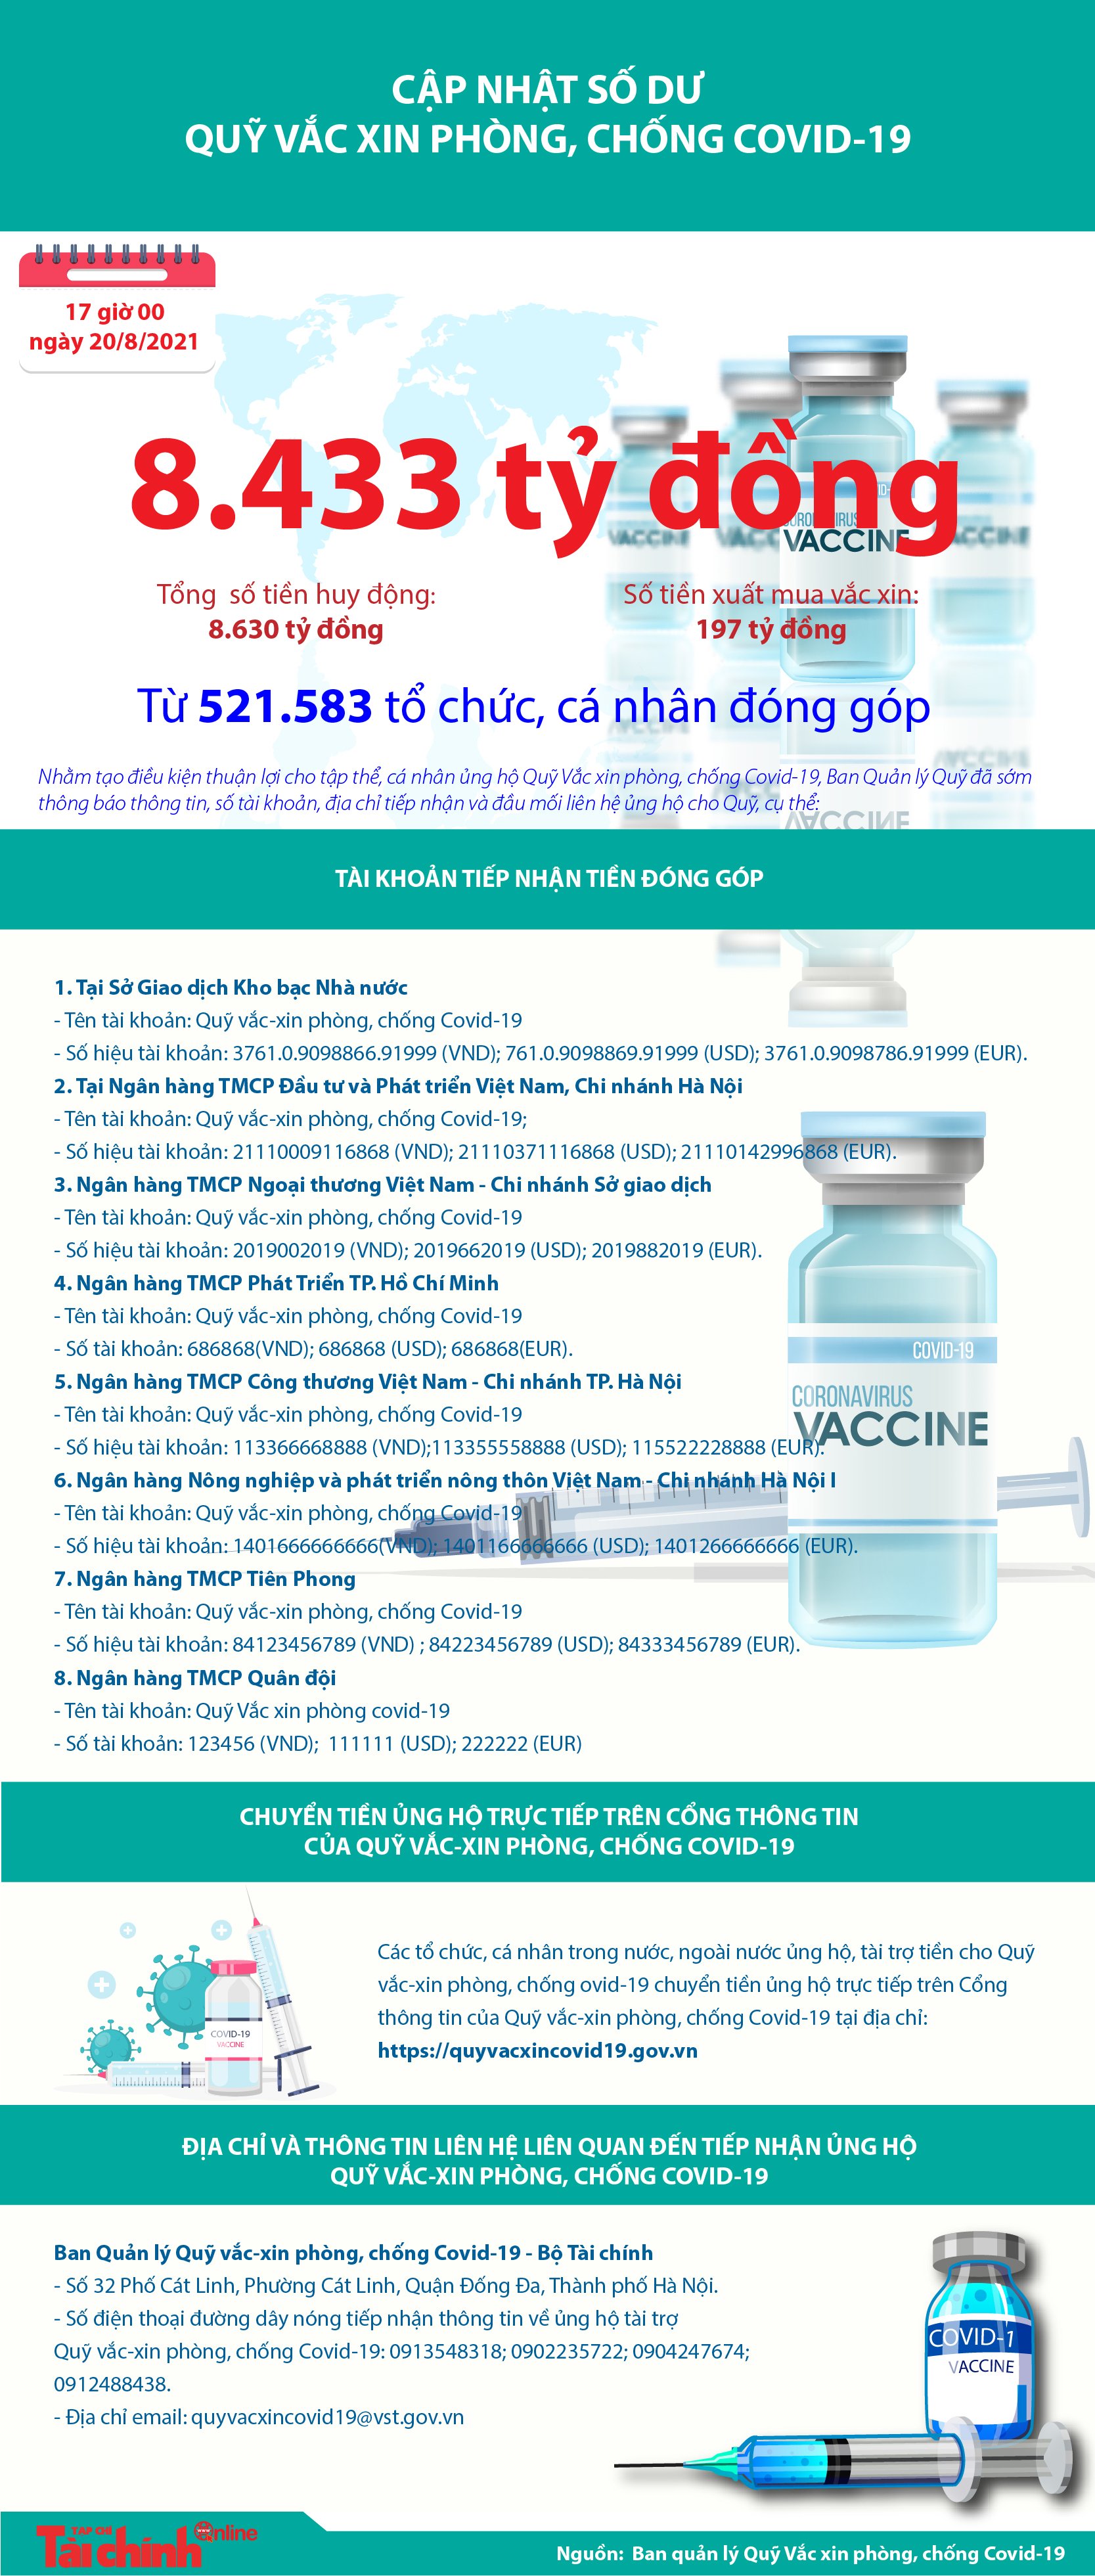 [Infographics] Quỹ Vắc xin phòng, chống COVID-19 còn dư 8.433 tỷ đồng - Ảnh 1